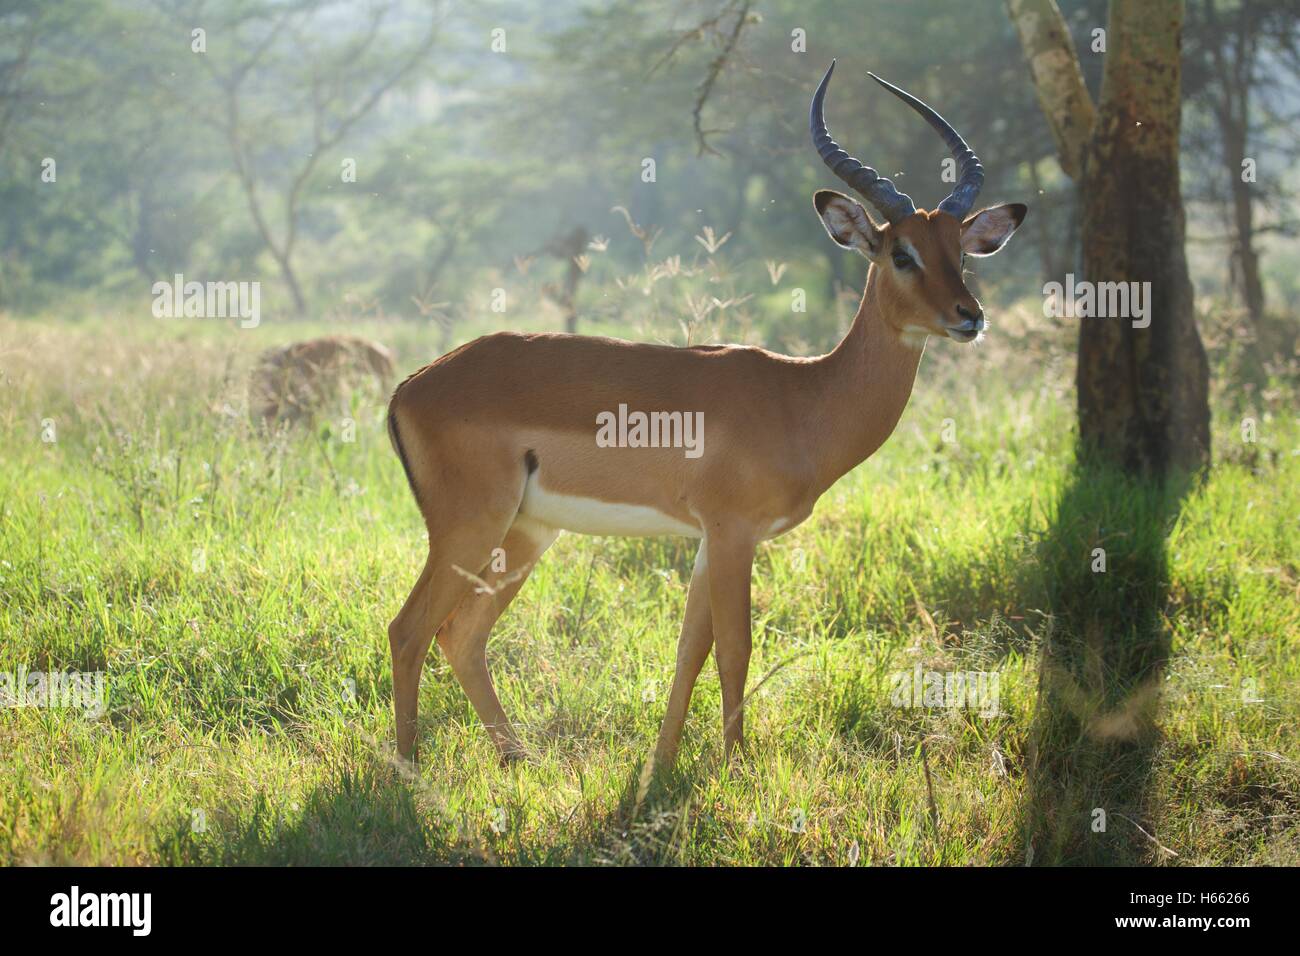 Viewing wild impala on safari in Lake Nakuru National Park, Kenya. Stock Photo